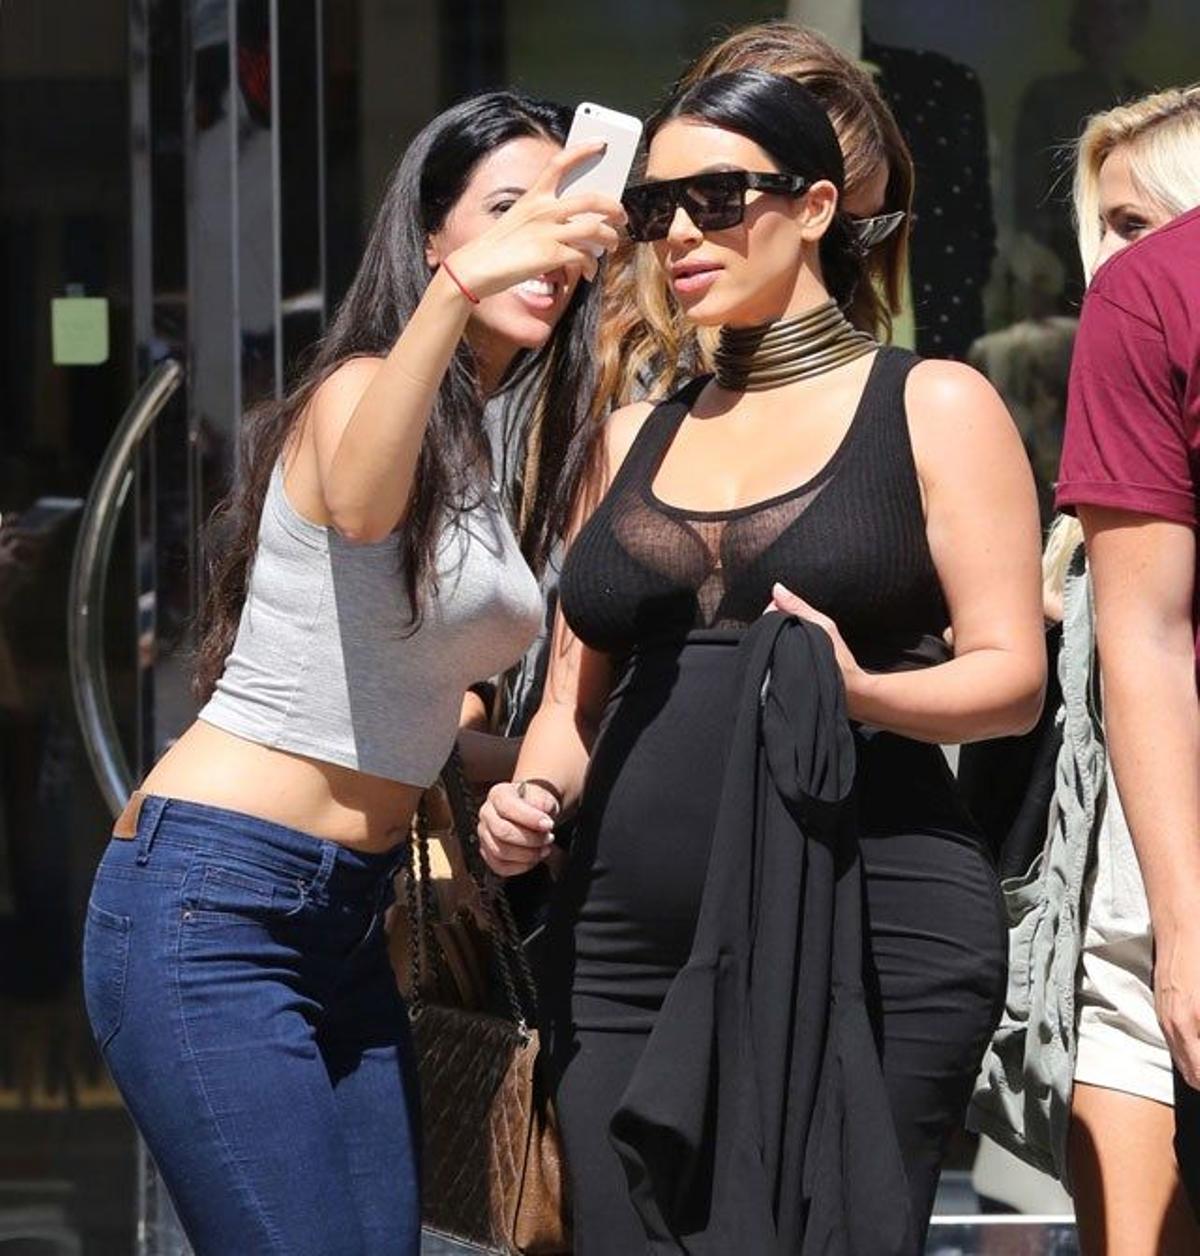 La fan que consiguió el selfie con Kim Kardashian